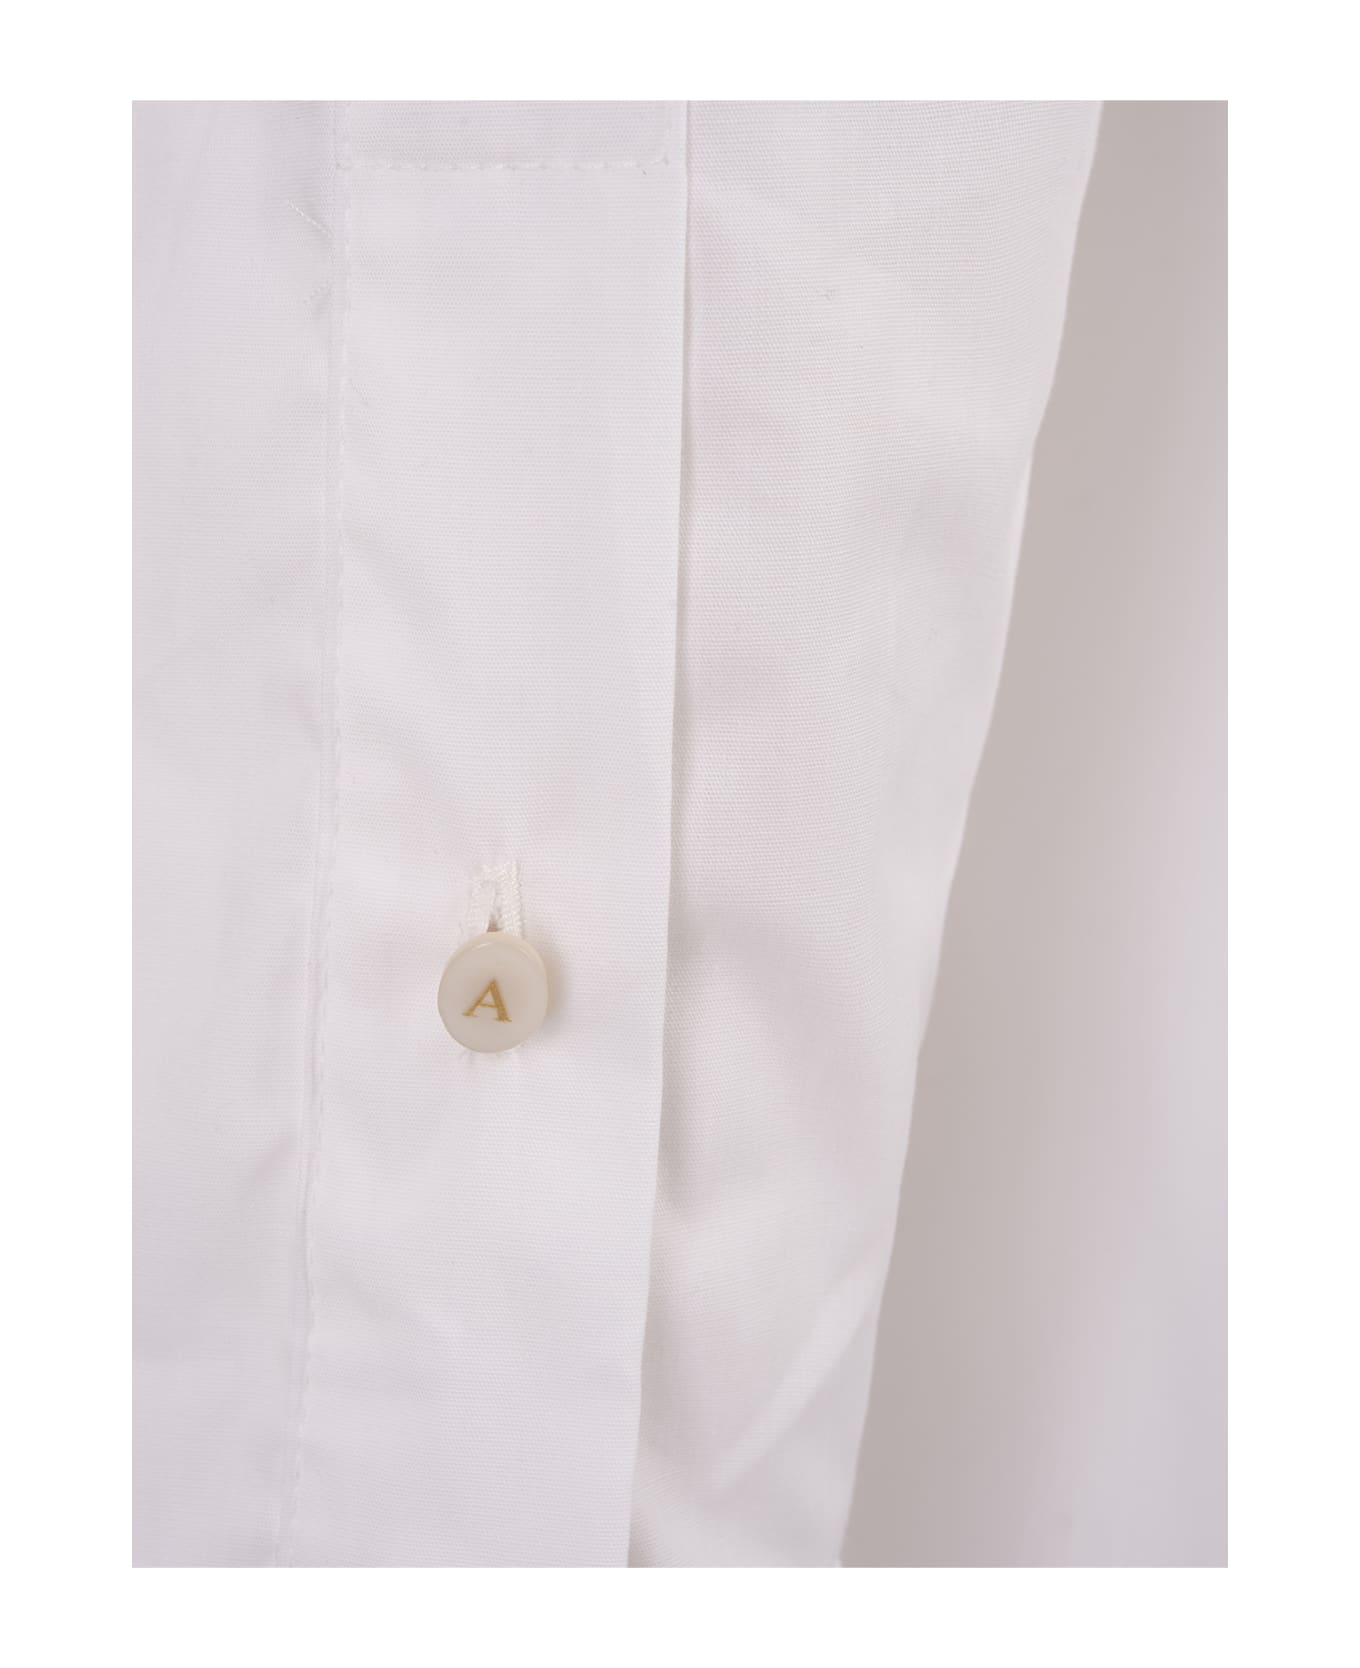 Amotea White Cotton Kaia Shirt - White